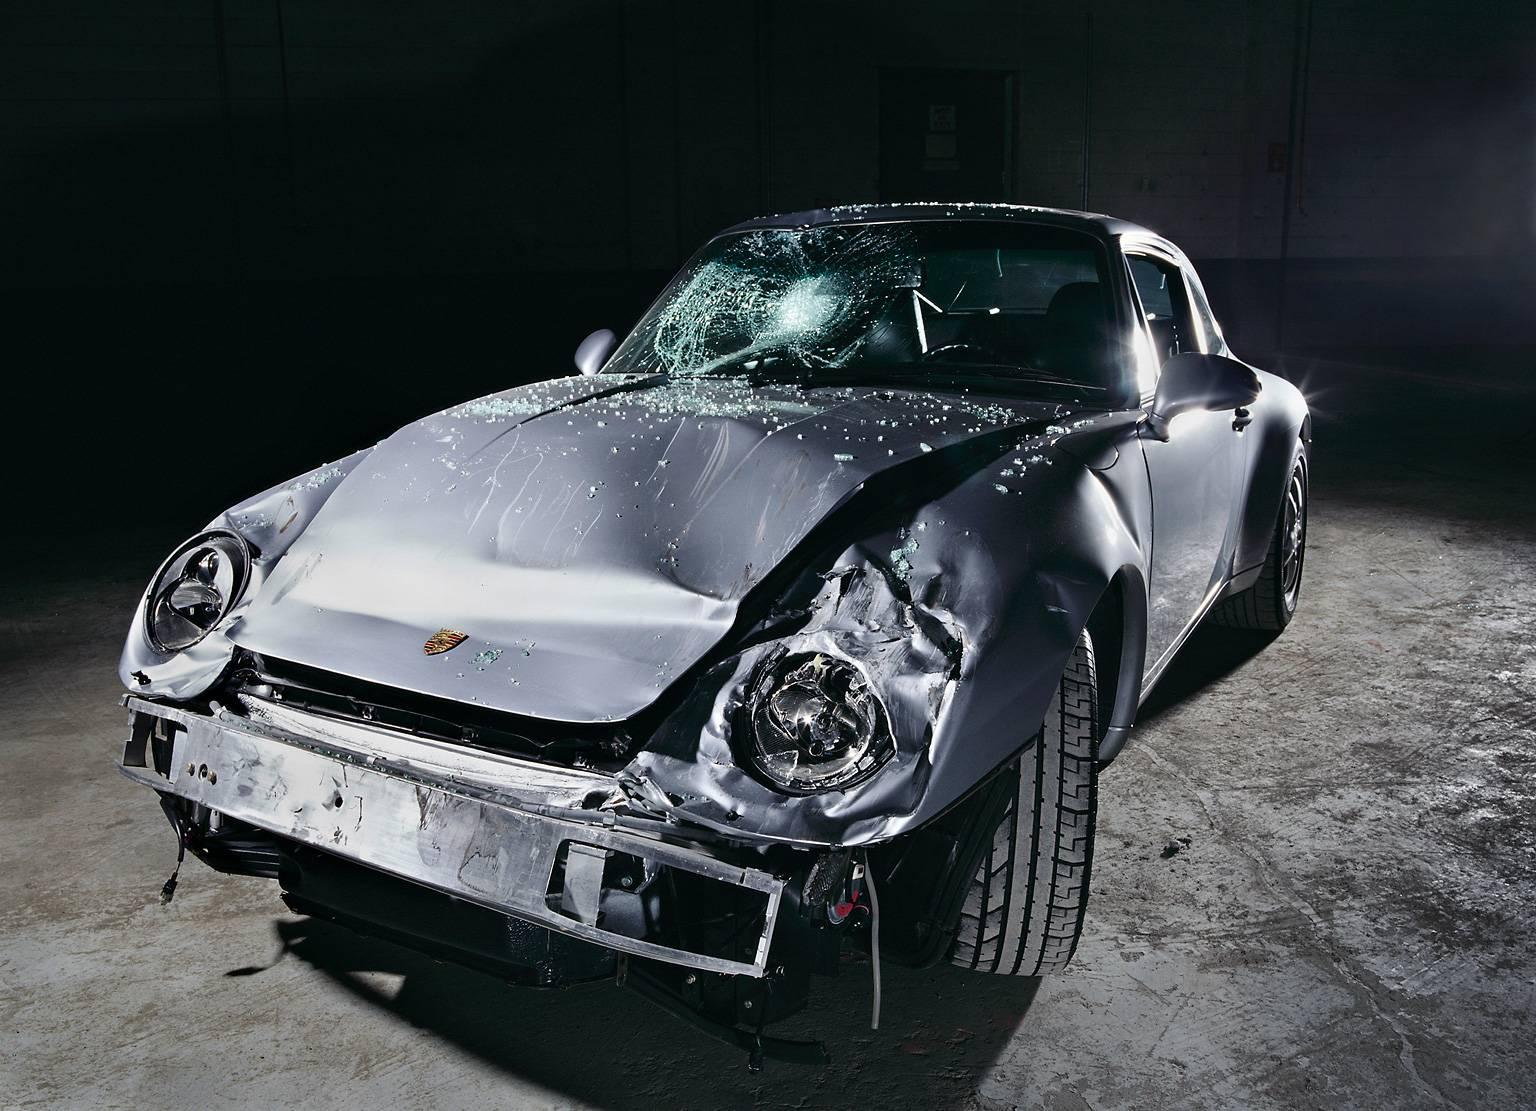 Frank Schott Color Photograph – Nine-One-One (Porsche 911) – Stilllebenfotografie eines ikonischen Unfallautos